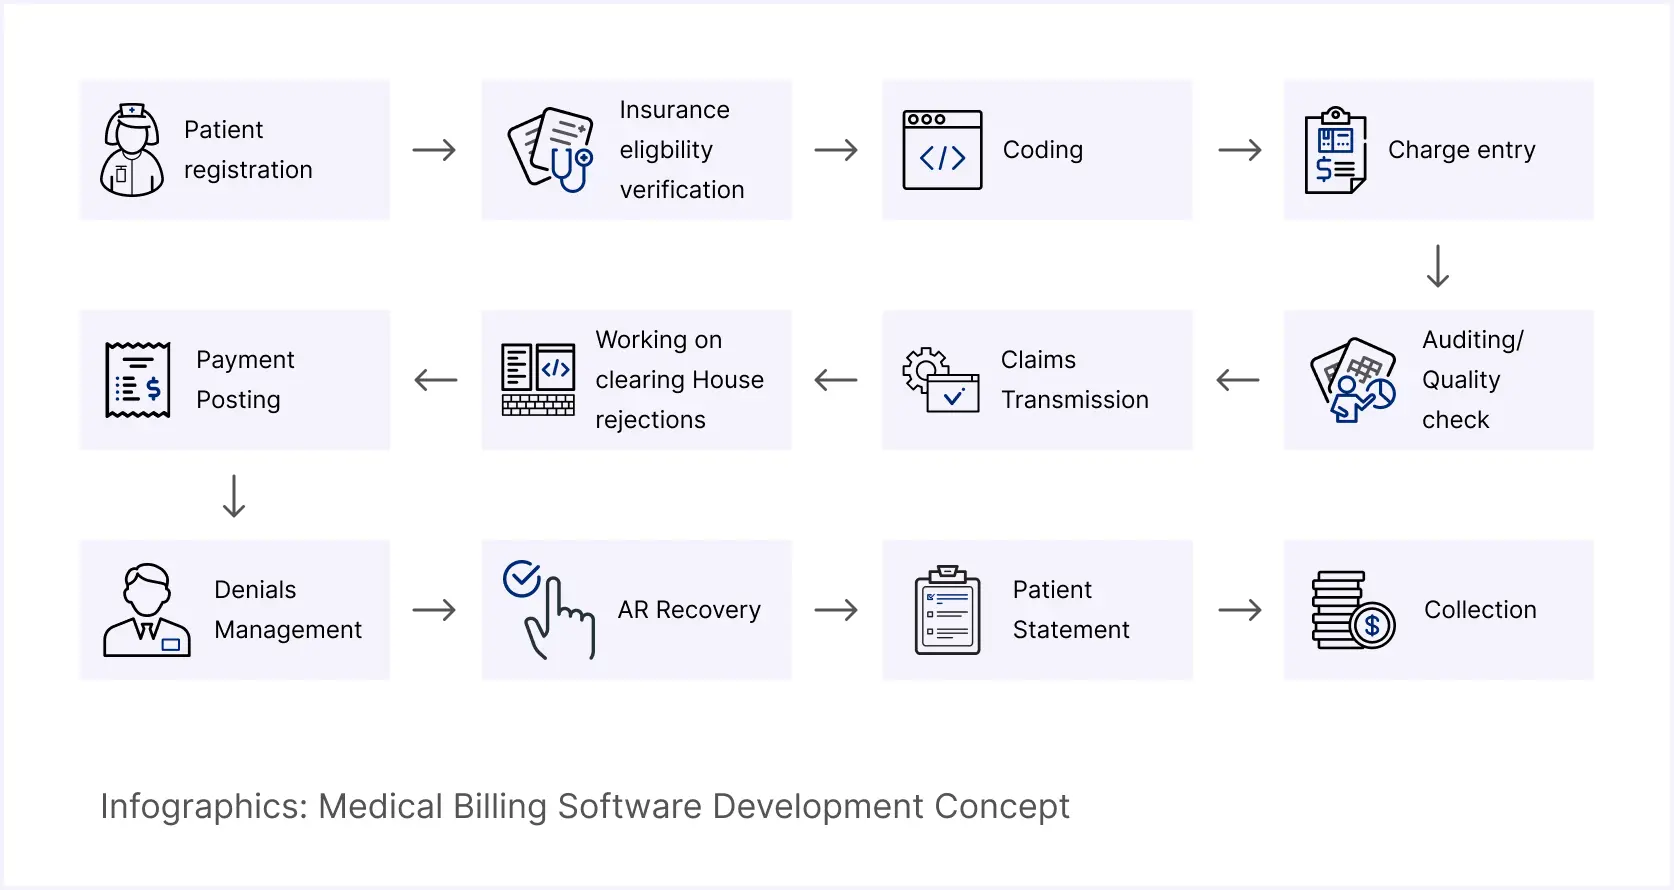 Medical Billing Software Development Concept